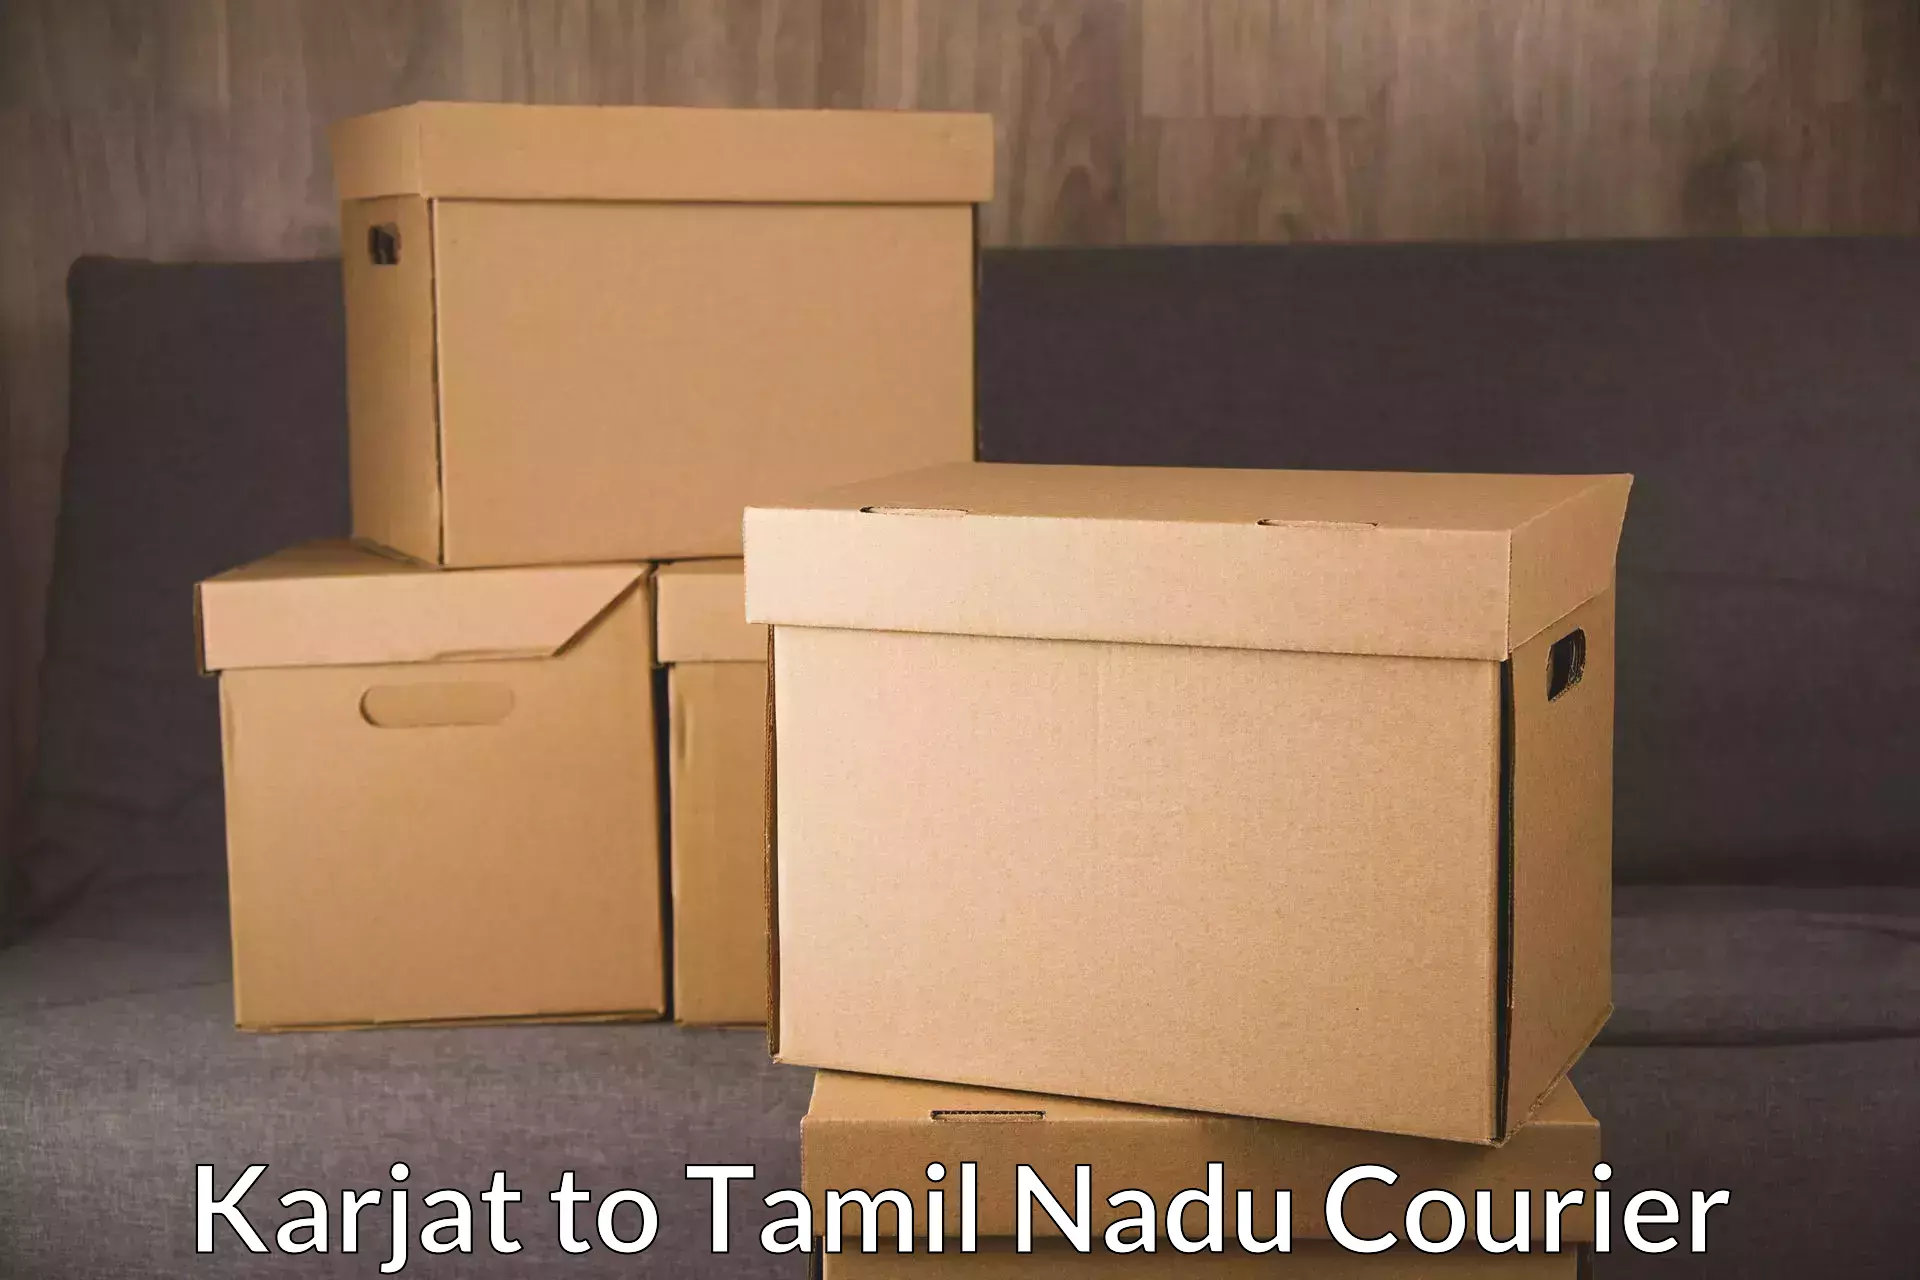 Advanced tracking systems Karjat to Tamil Nadu